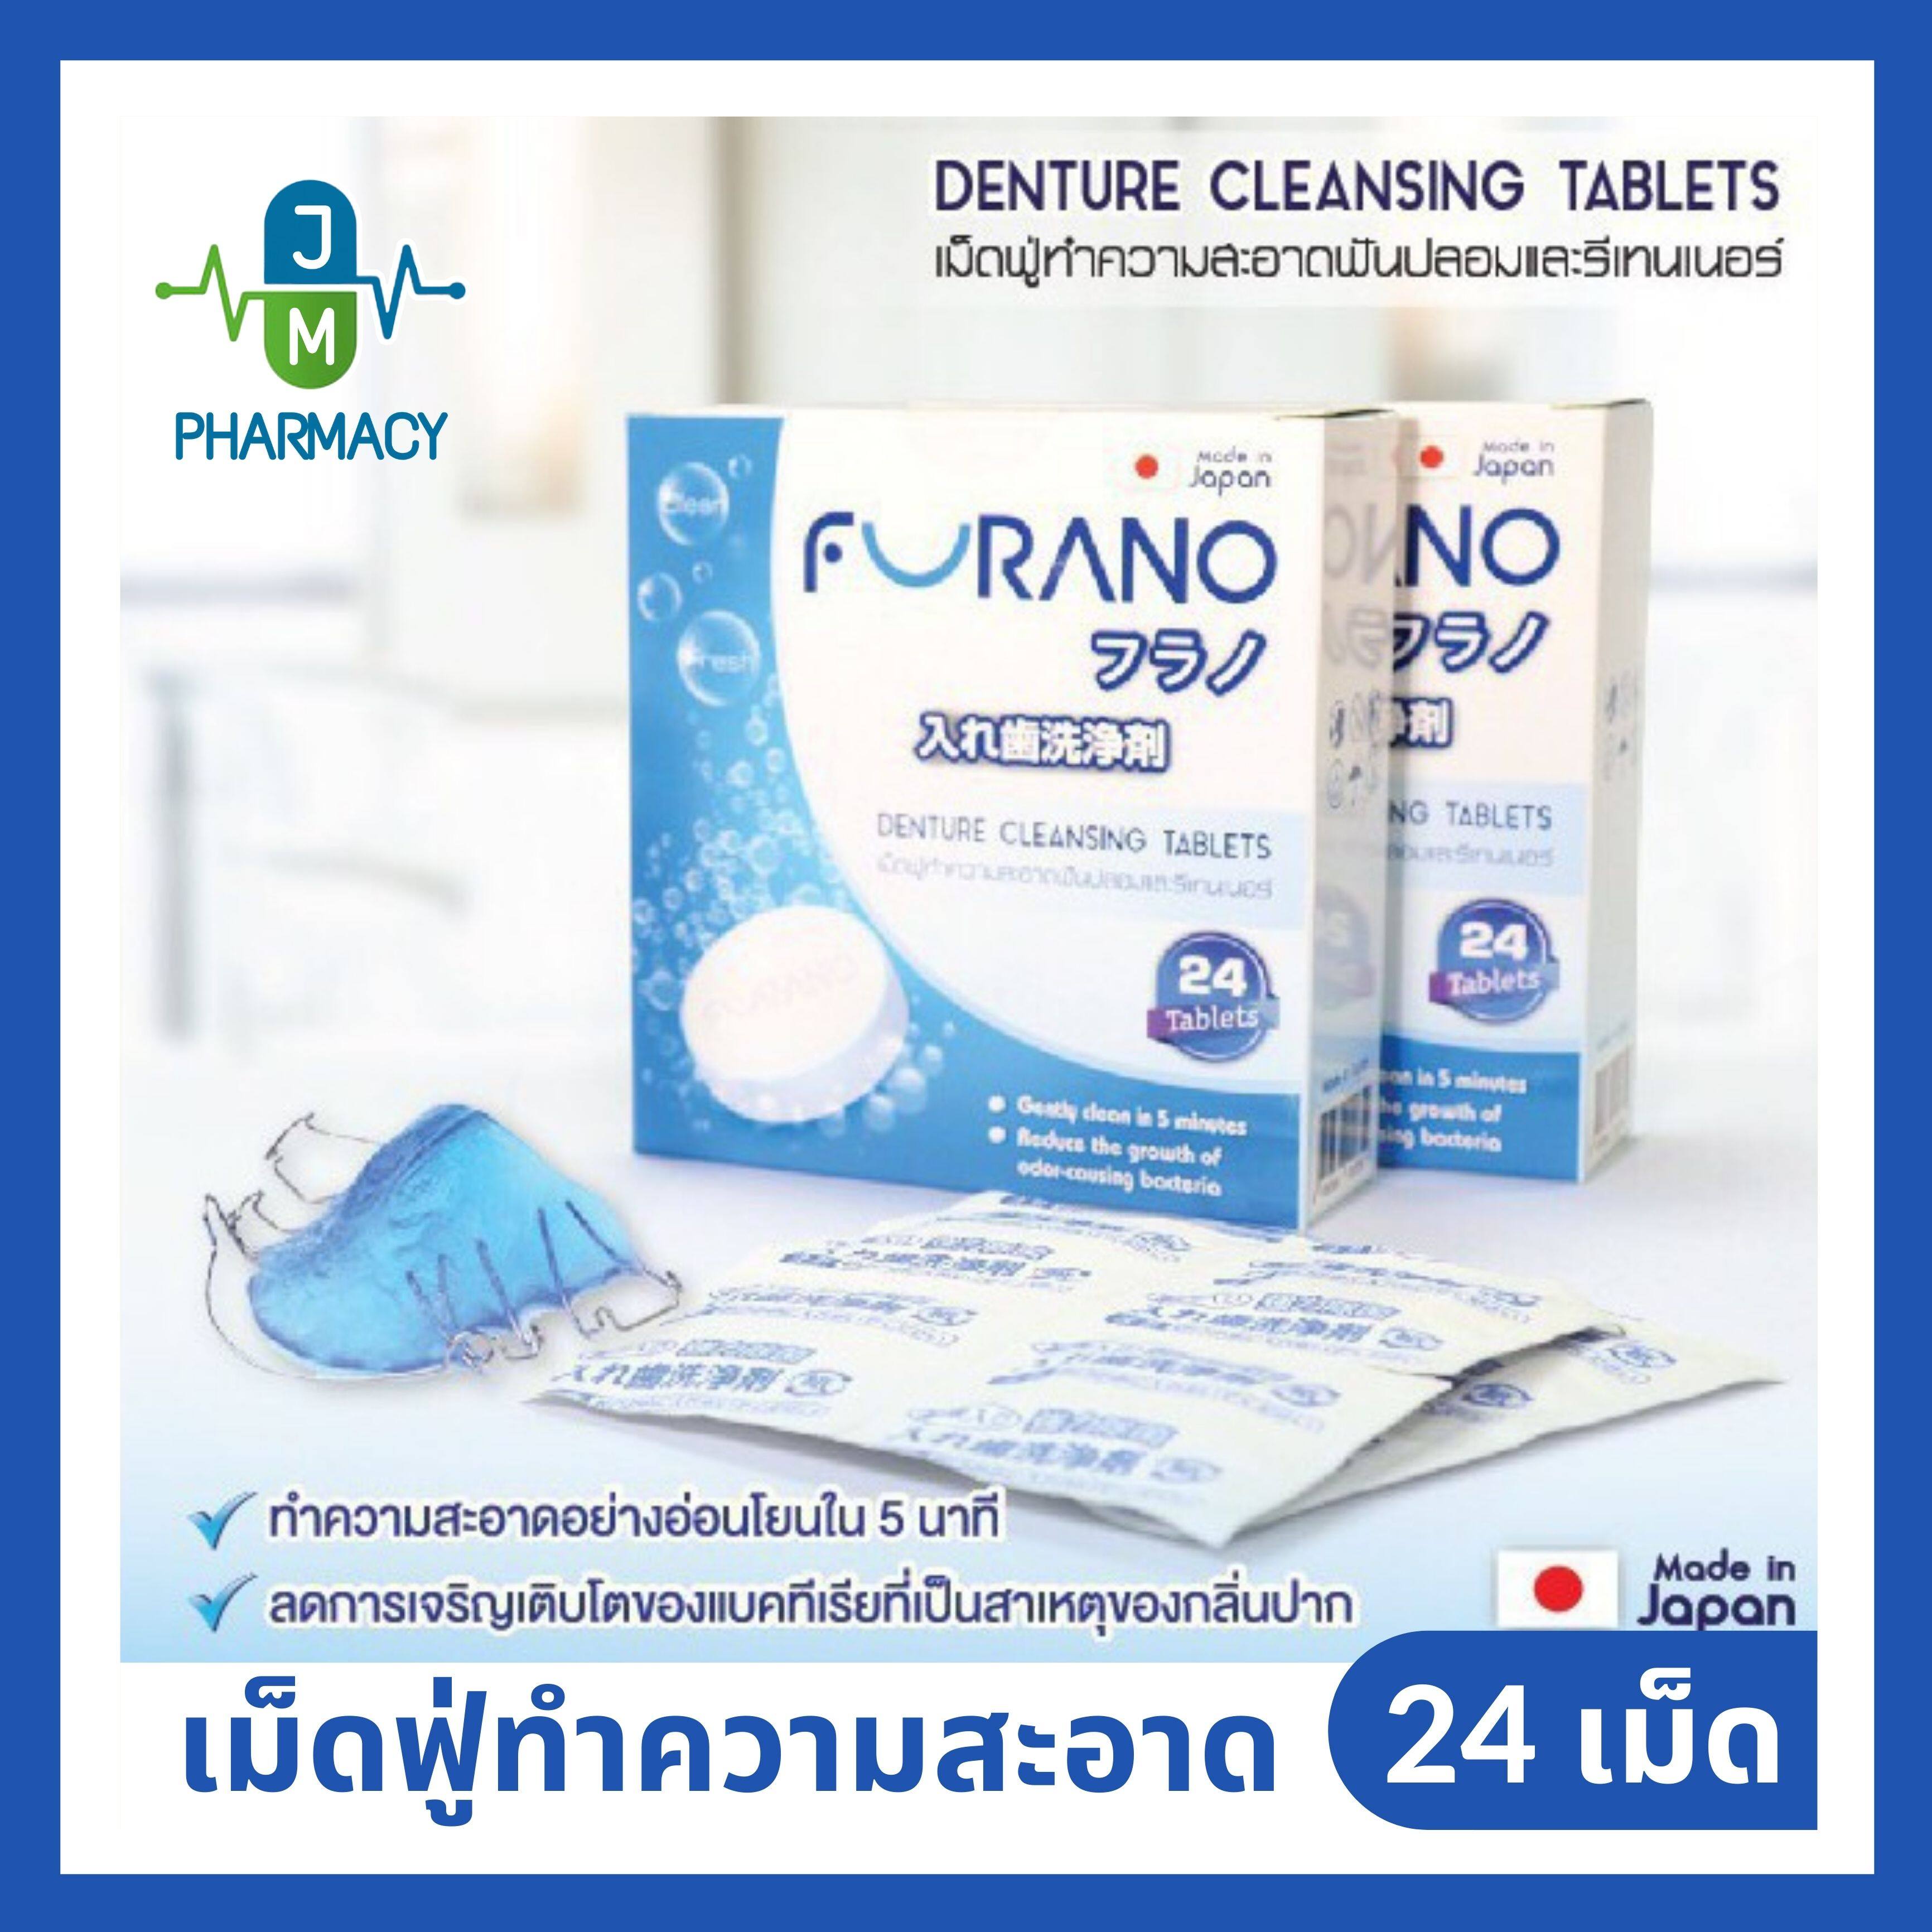 Furano Denture Cleansing Tablets ฟูราโนะ เม็ดฟู่ทำความสะอาดฟันปลอมและรีเทนเนอร์ 24 เม็ด 1 กล่อง